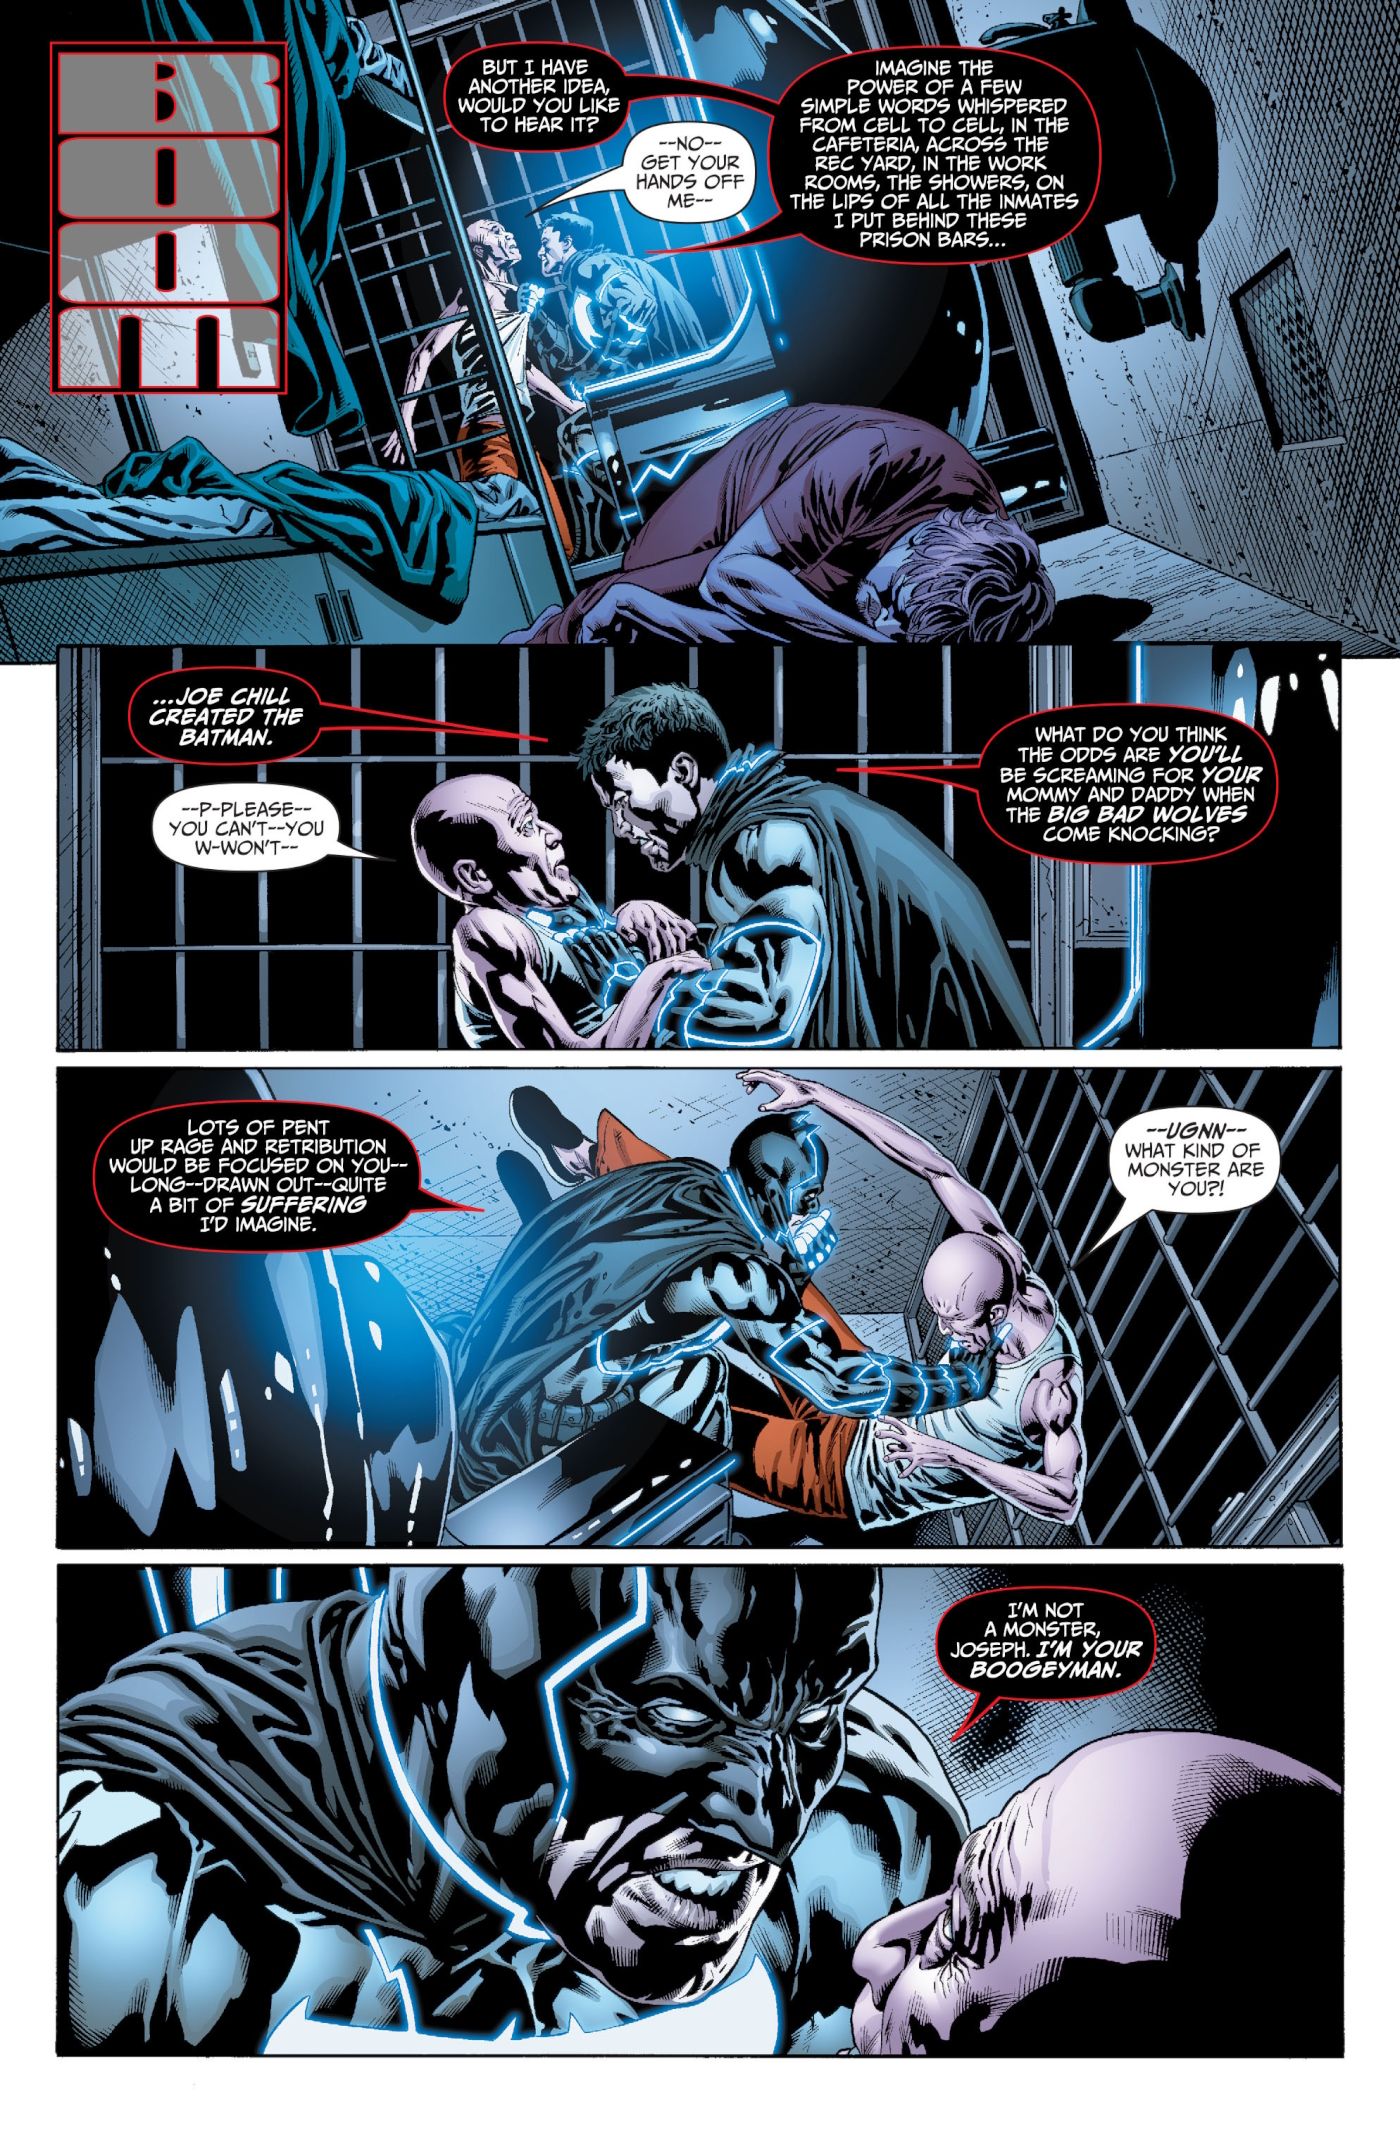 Batman Confronts Joe Chill In Prison